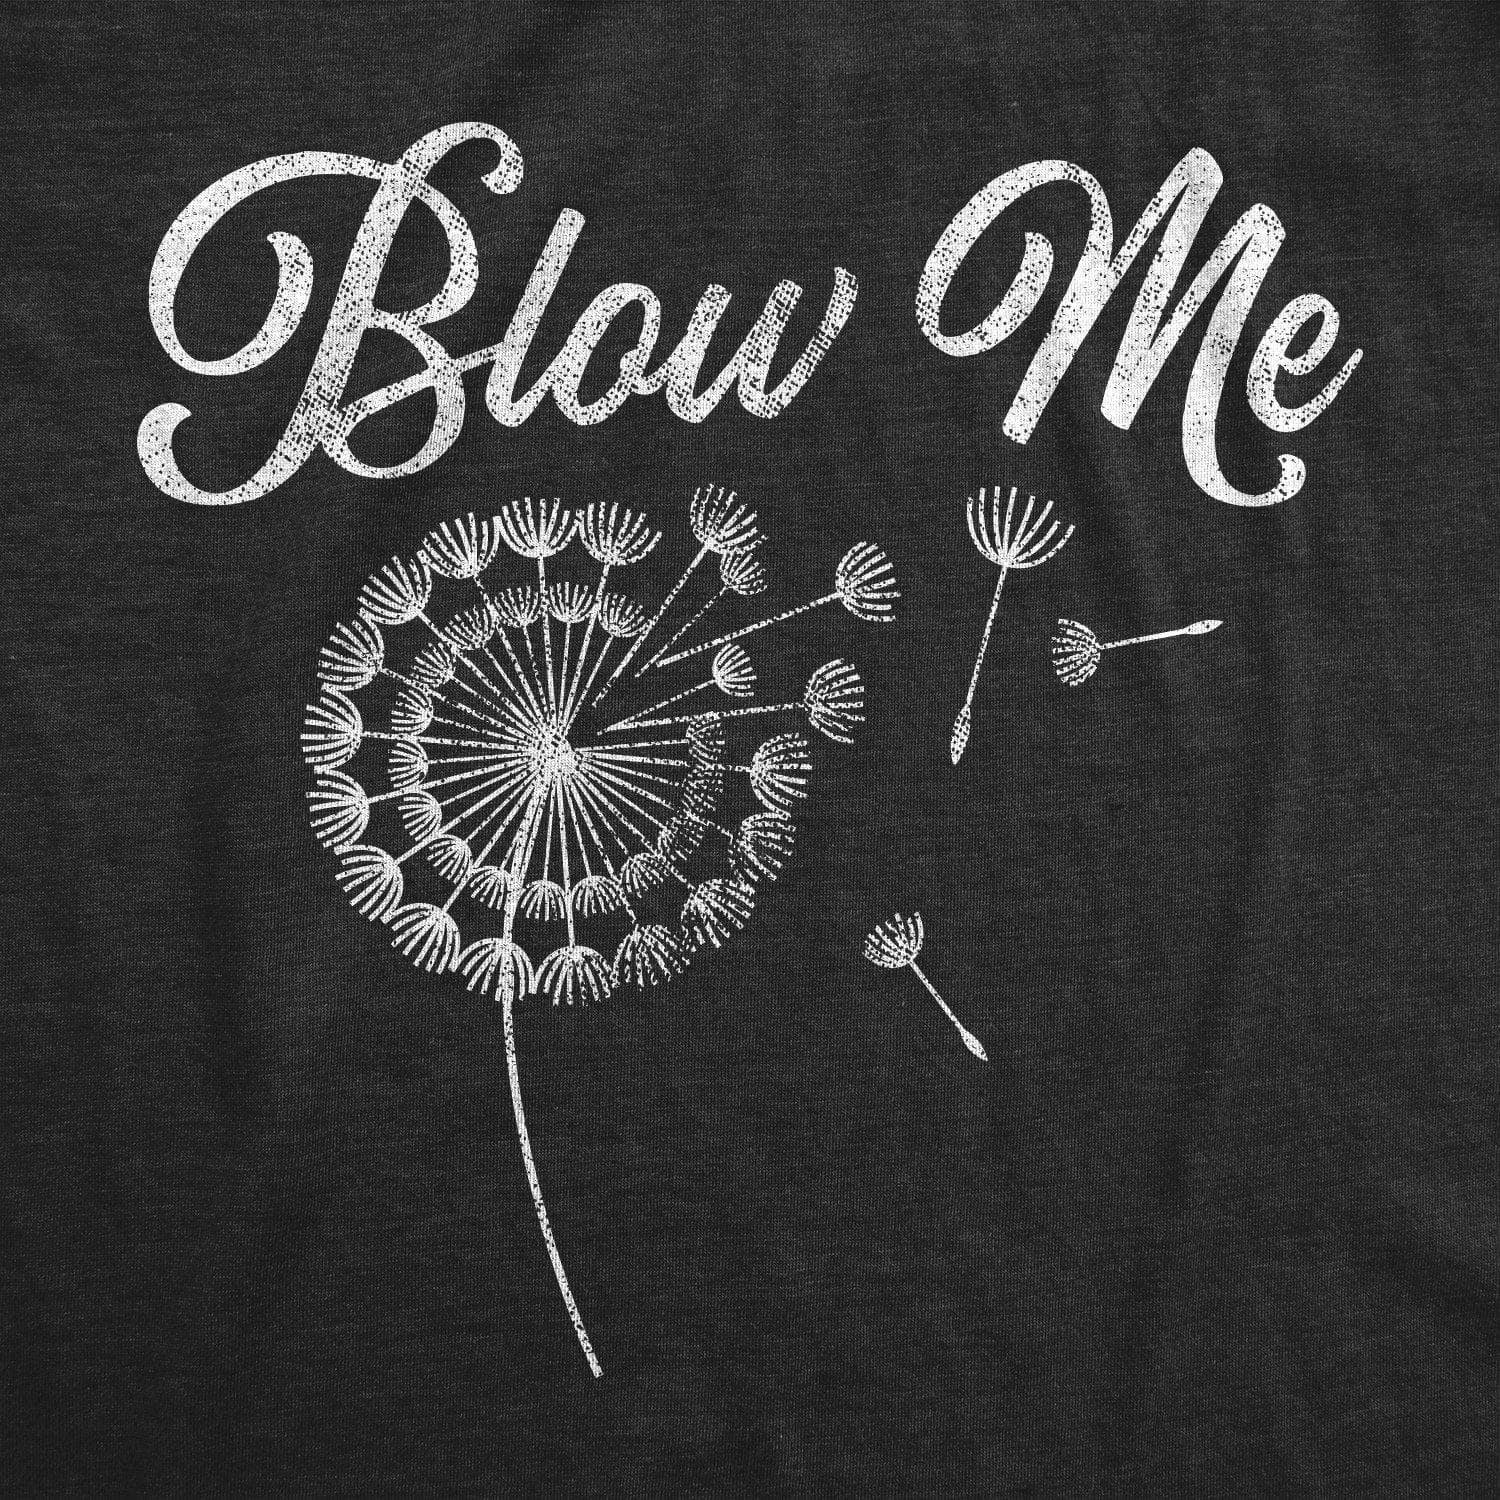 Blow Me Dandelion Men's Tshirt - Crazy Dog T-Shirts